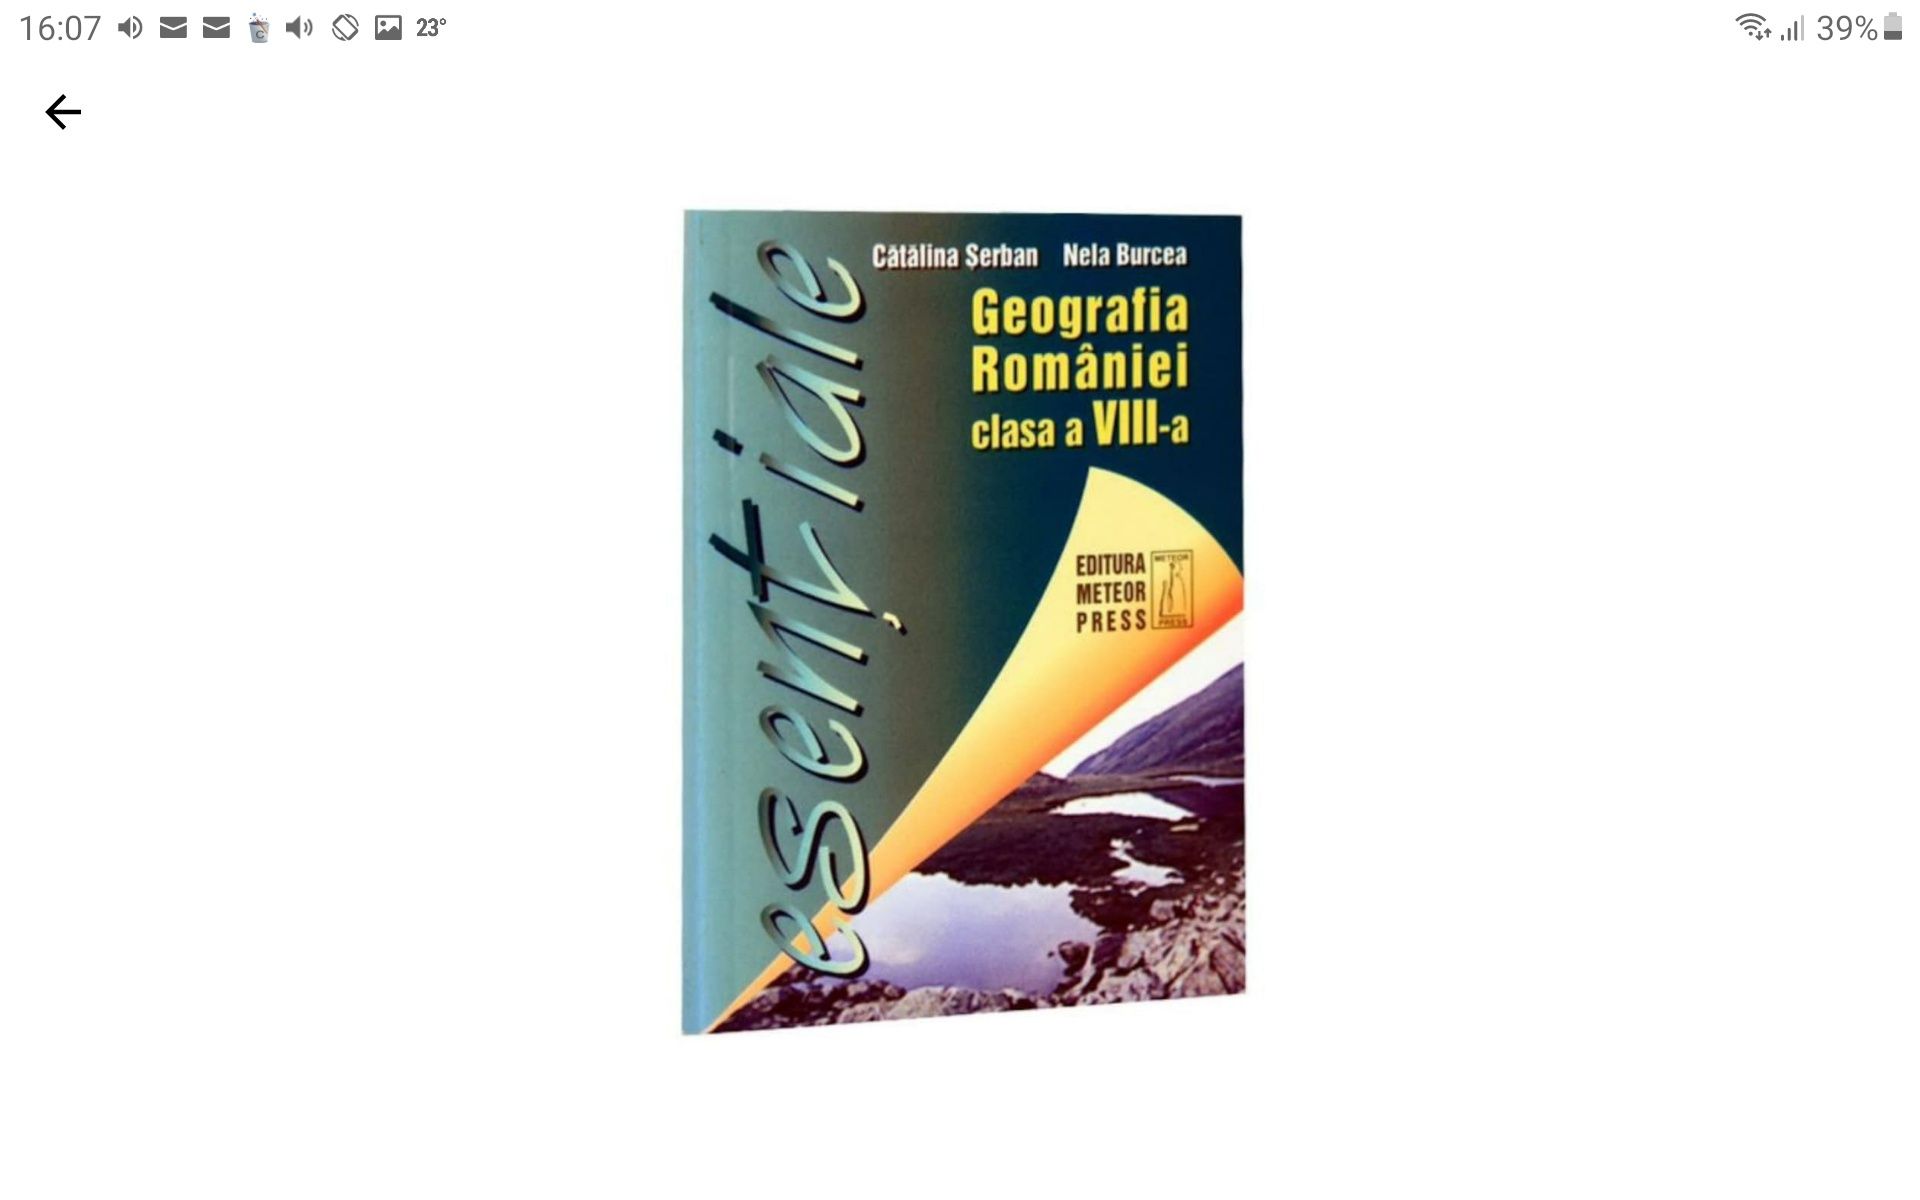 Geografia Romaniei cls. a VIII-a,2003- Catalina Serban si Nela Burcea